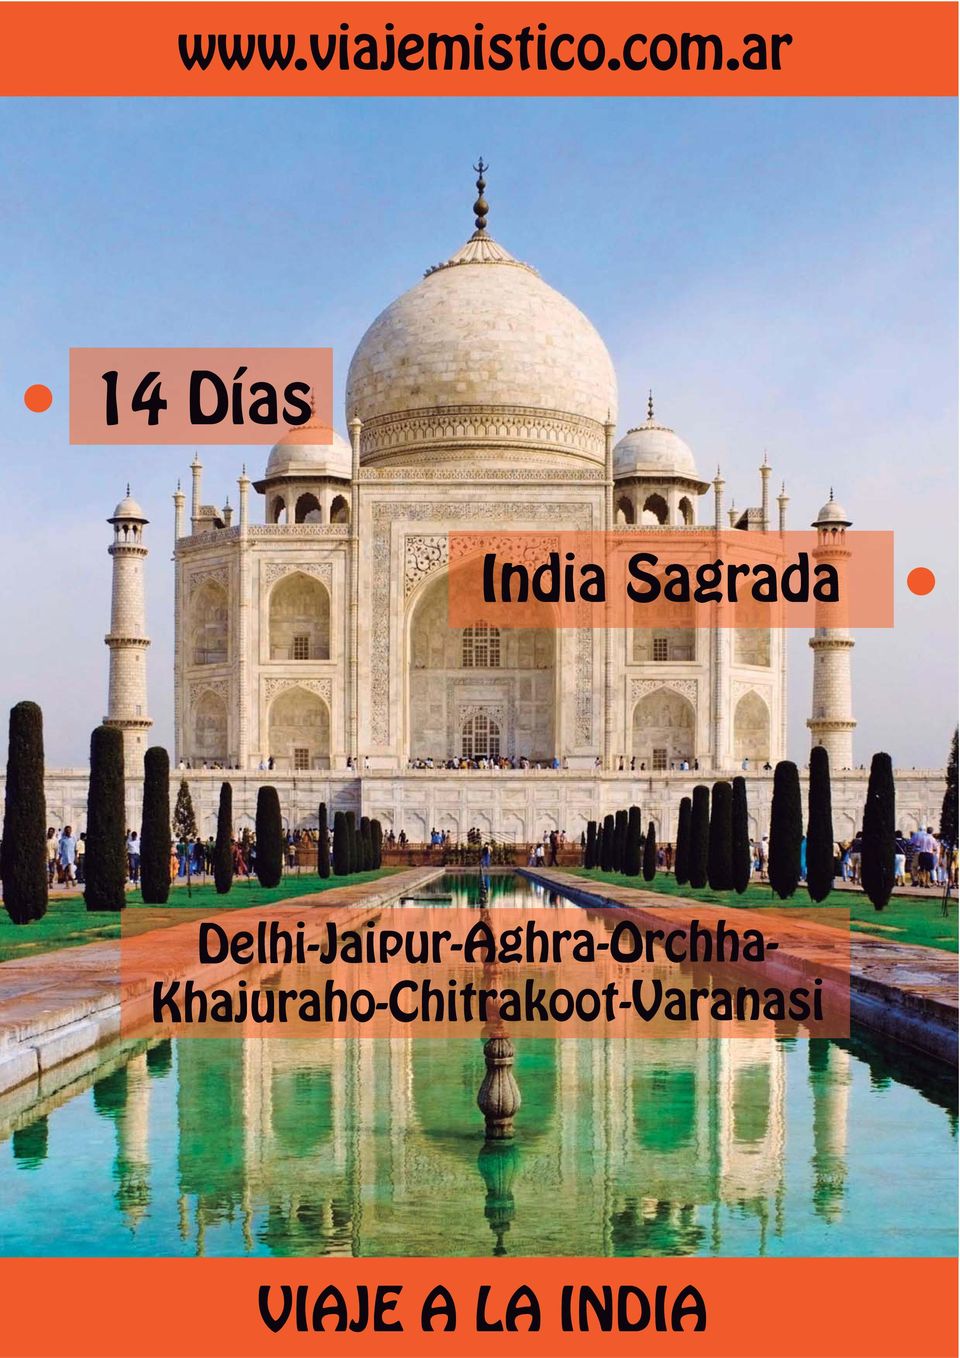 Delhi-Jaipur-Aghra-Orchha-